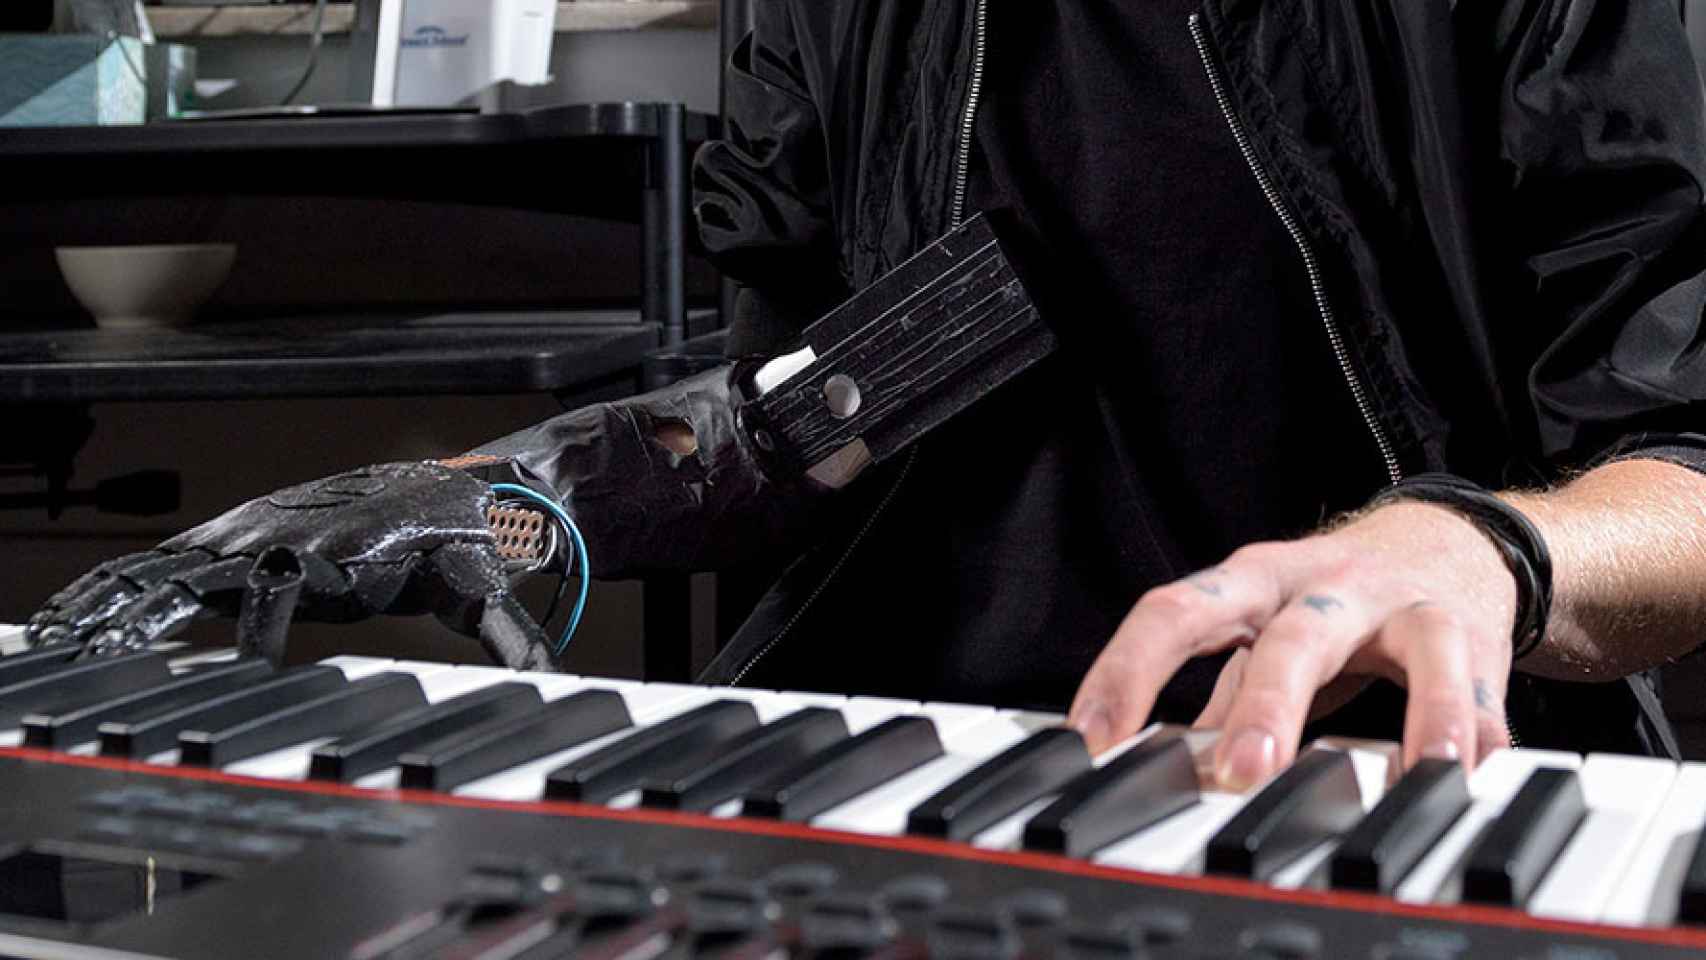 He can play piano. Робот пианист. Робот играет на пианино. Робот пианист в олимпийской деревне. Робот играющий на пианино.